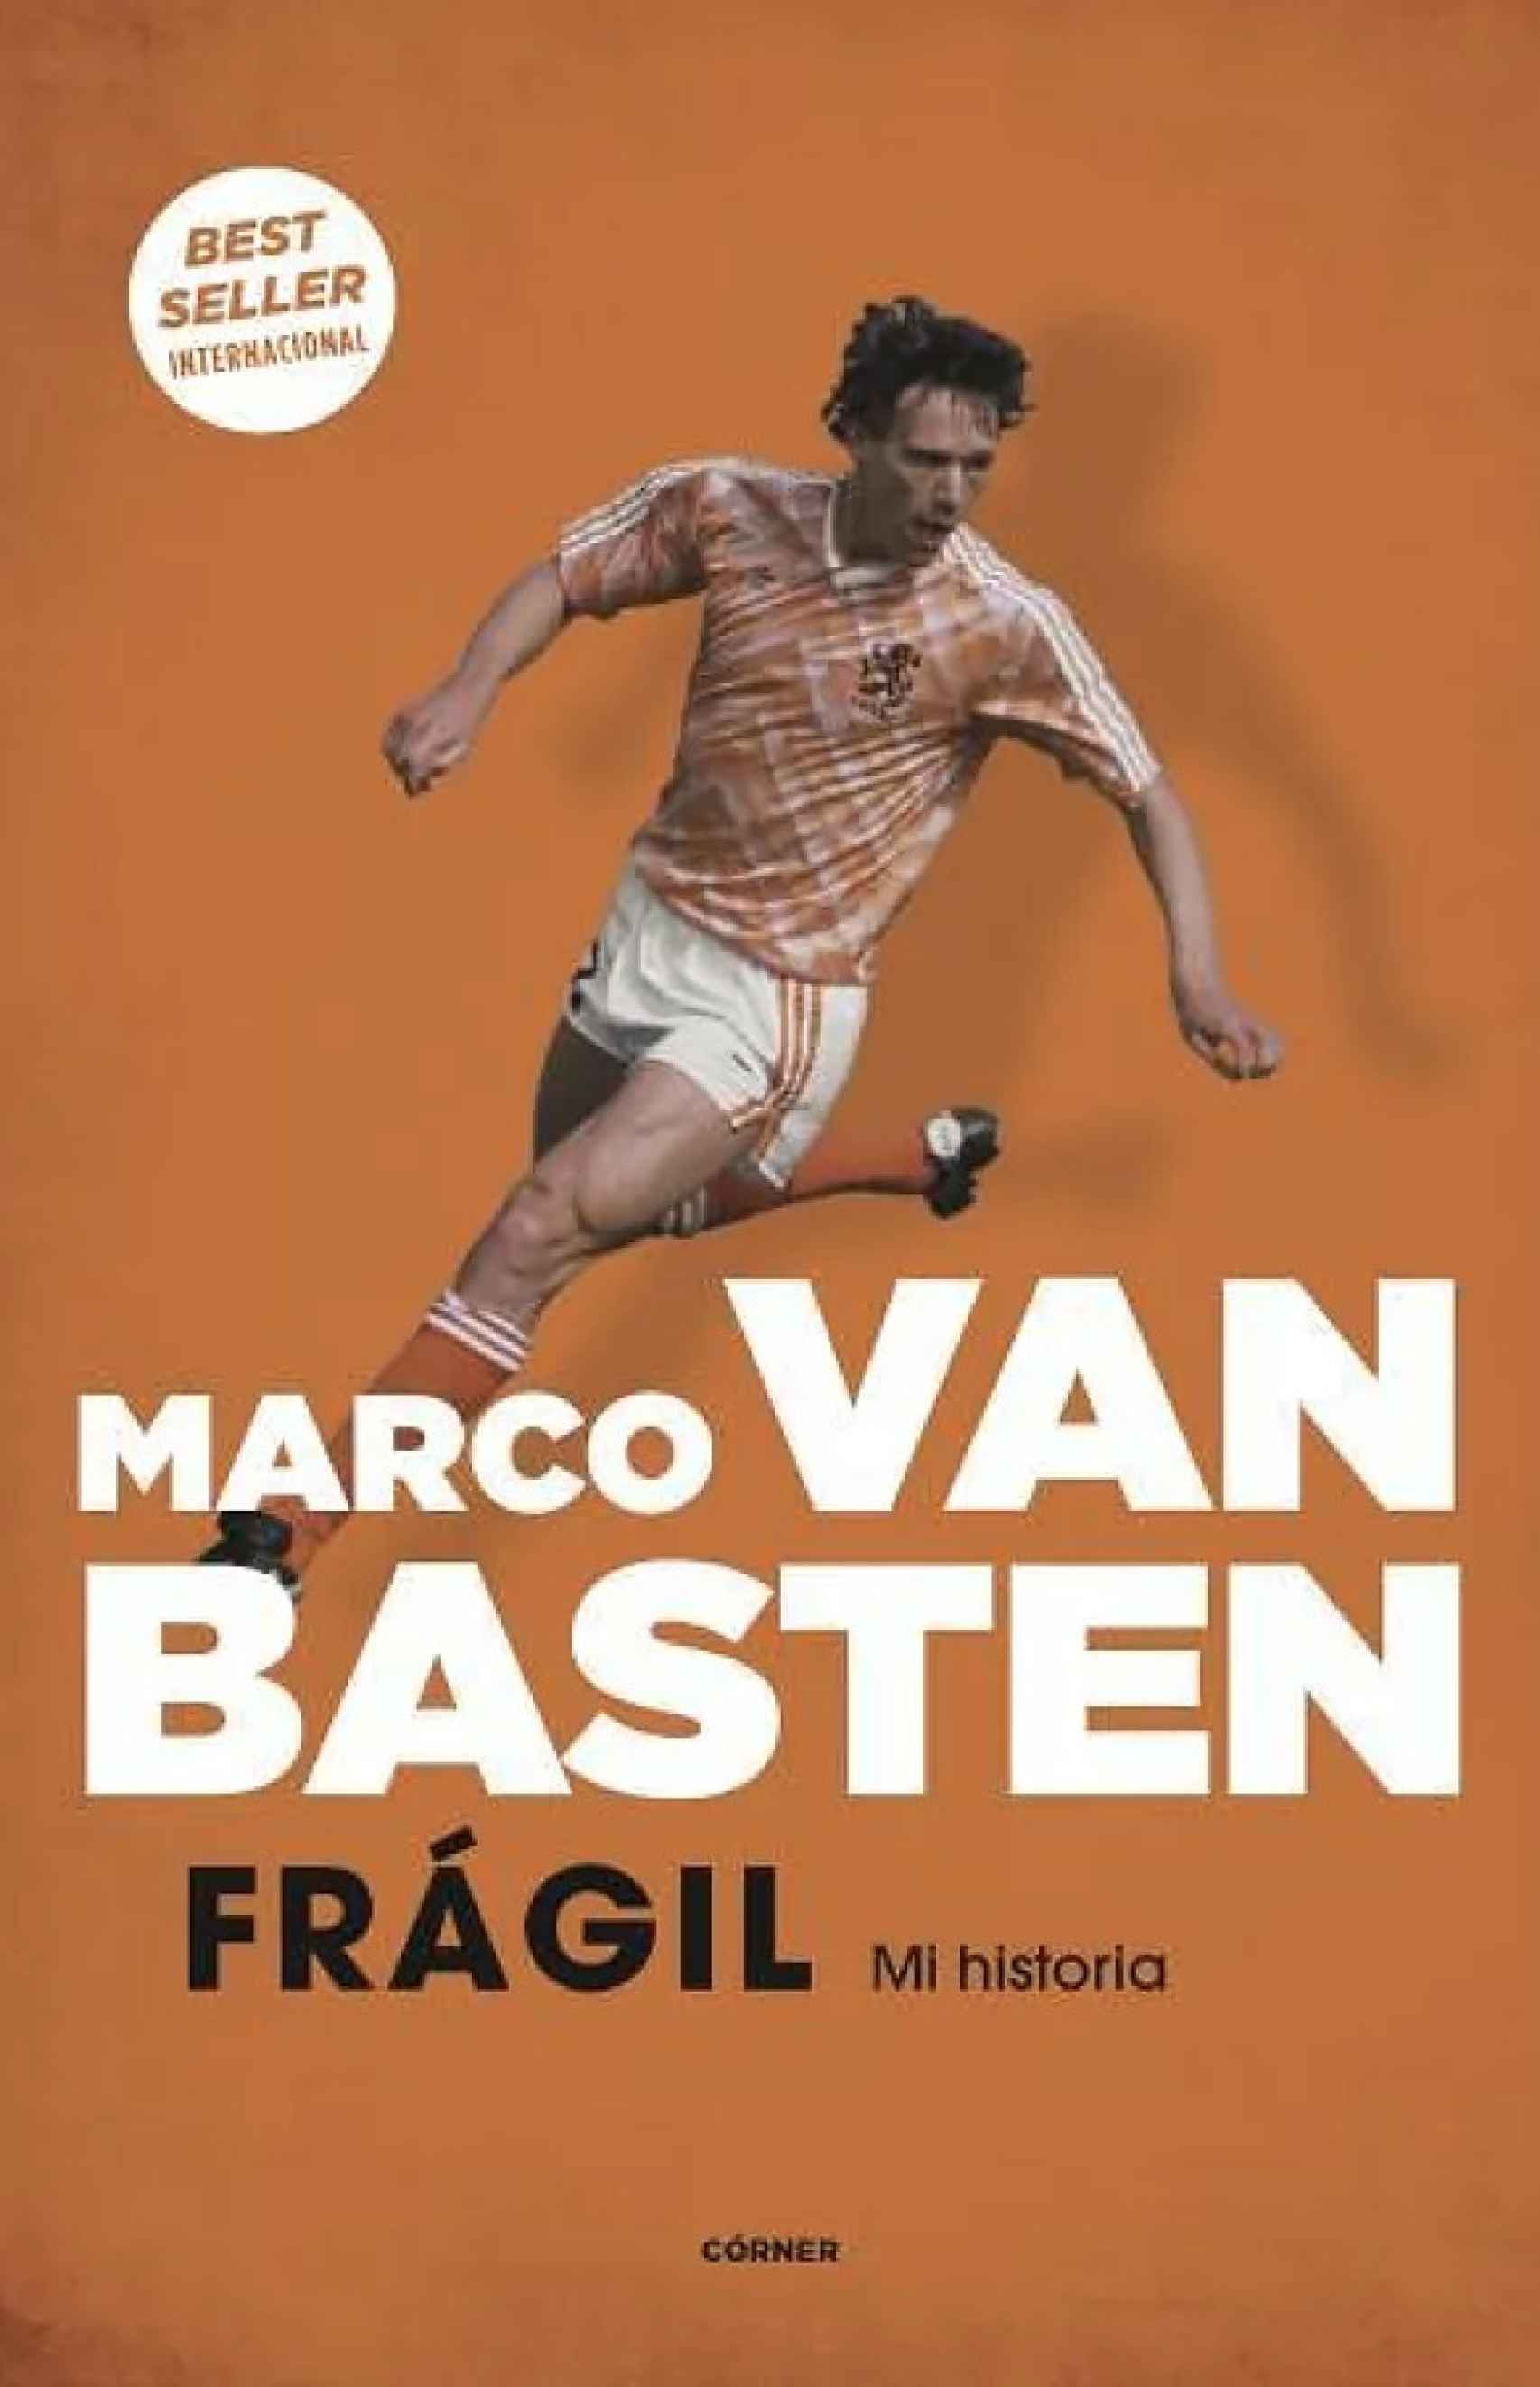 La biografía de Marco Van Basten